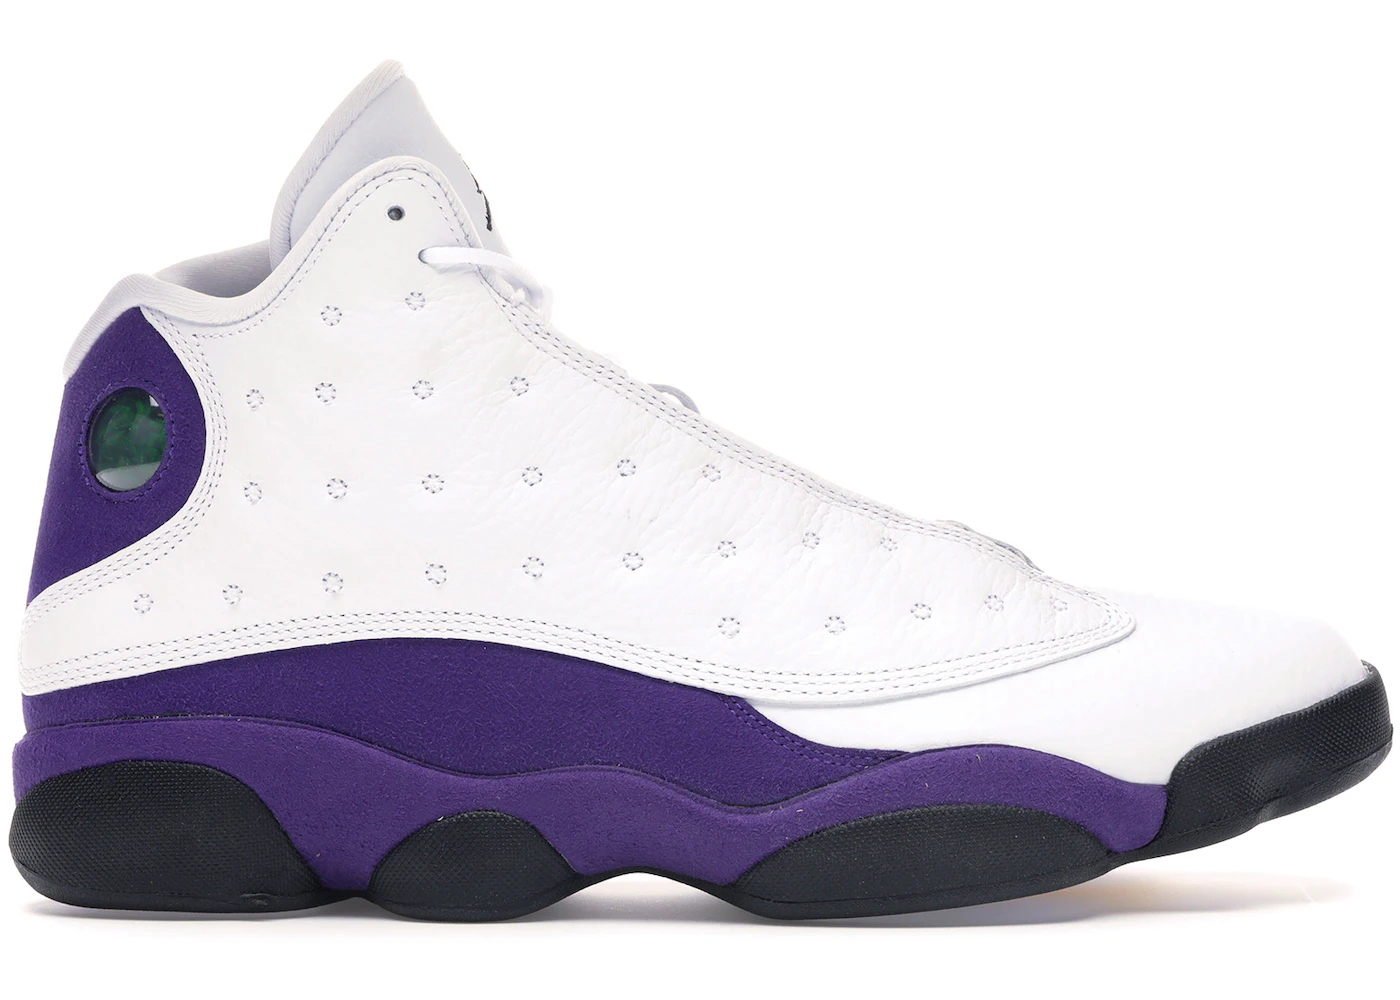 Air Jordan 13 Retro Lakers Men's Shoe - White/Black/Court Purple/University Gold - 18